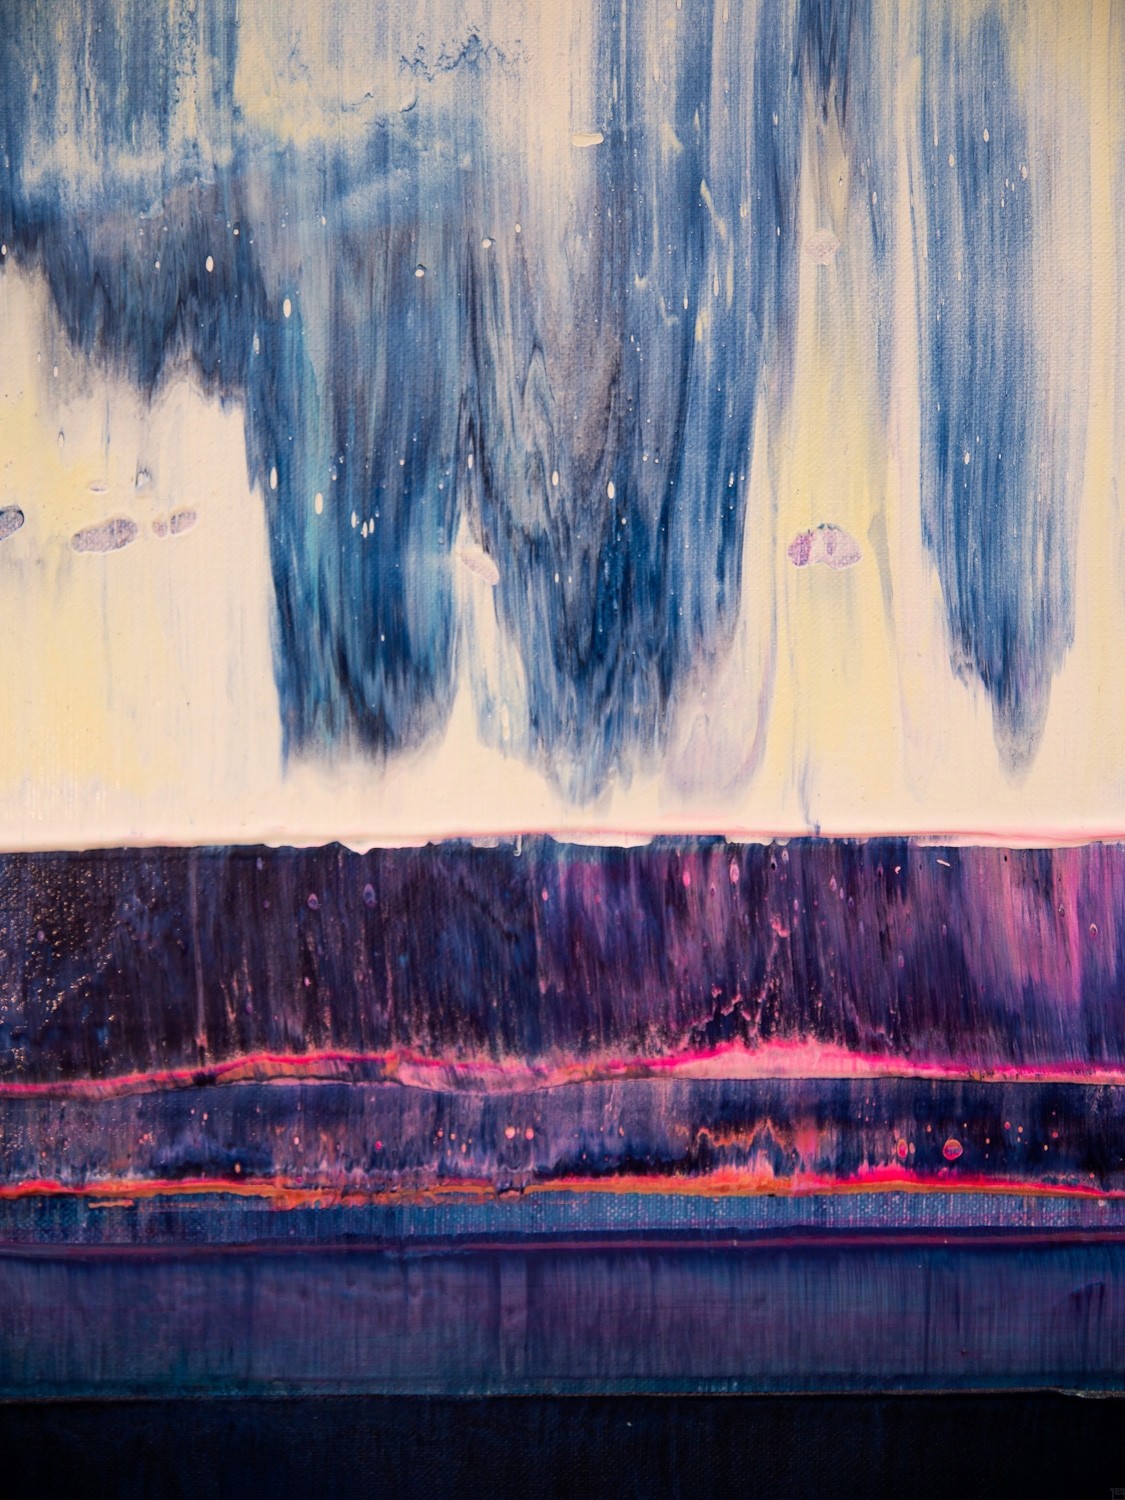 Prism 14 – Iceberg Under Line | Malerei von Lali Torma | Acryl auf Leinwand, abstrakt, detail02